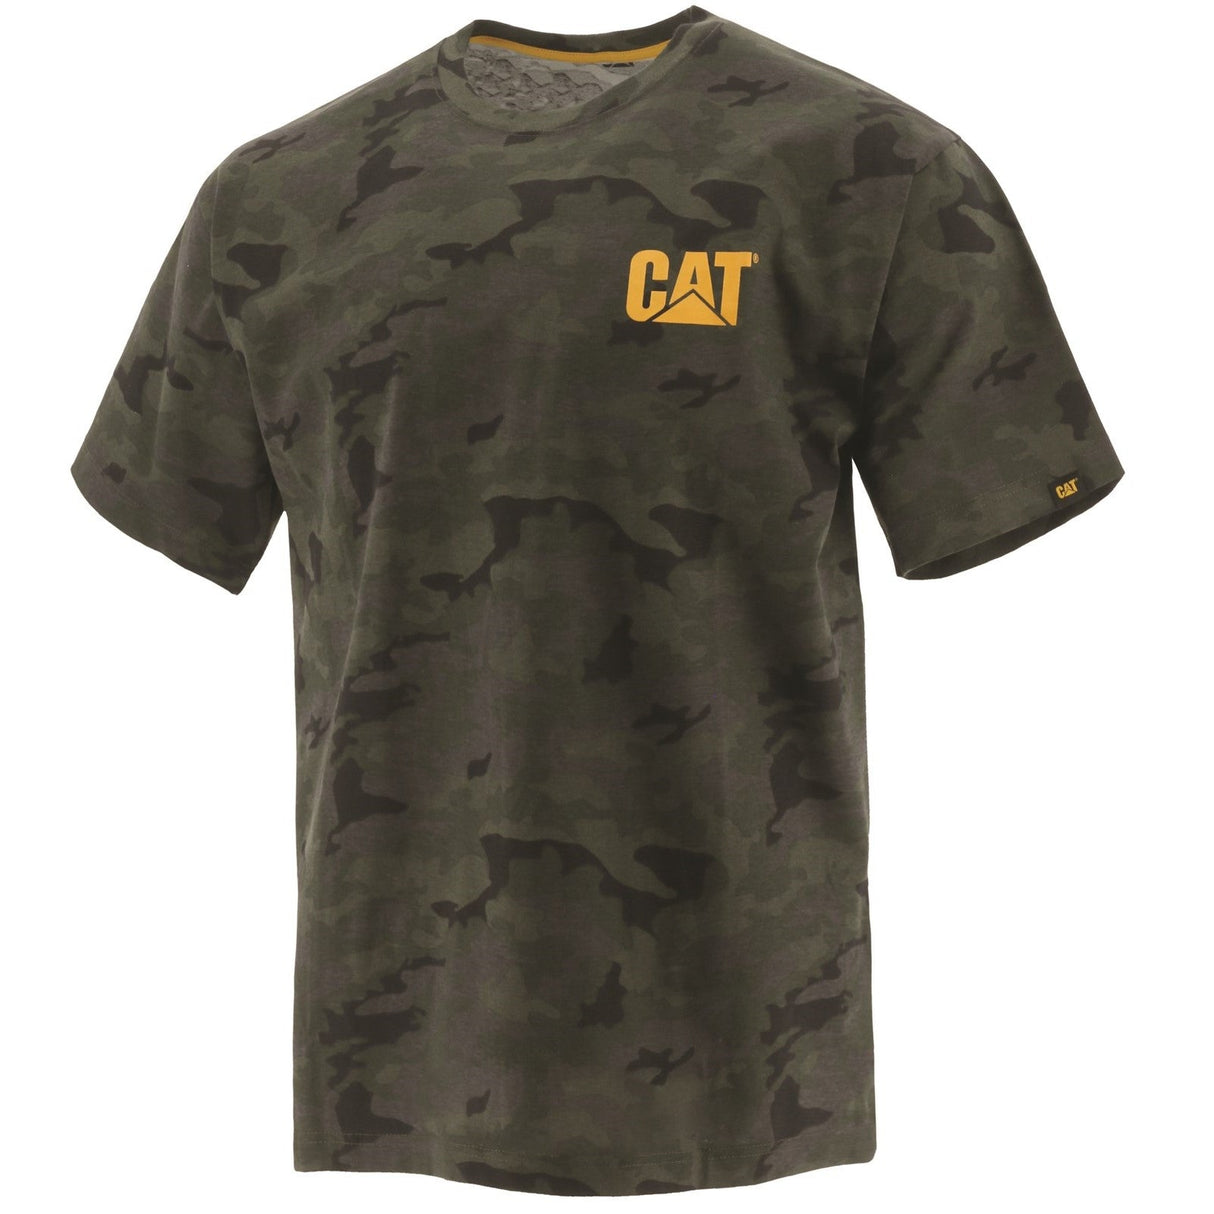 Caterpillar-Marken-T-Shirt